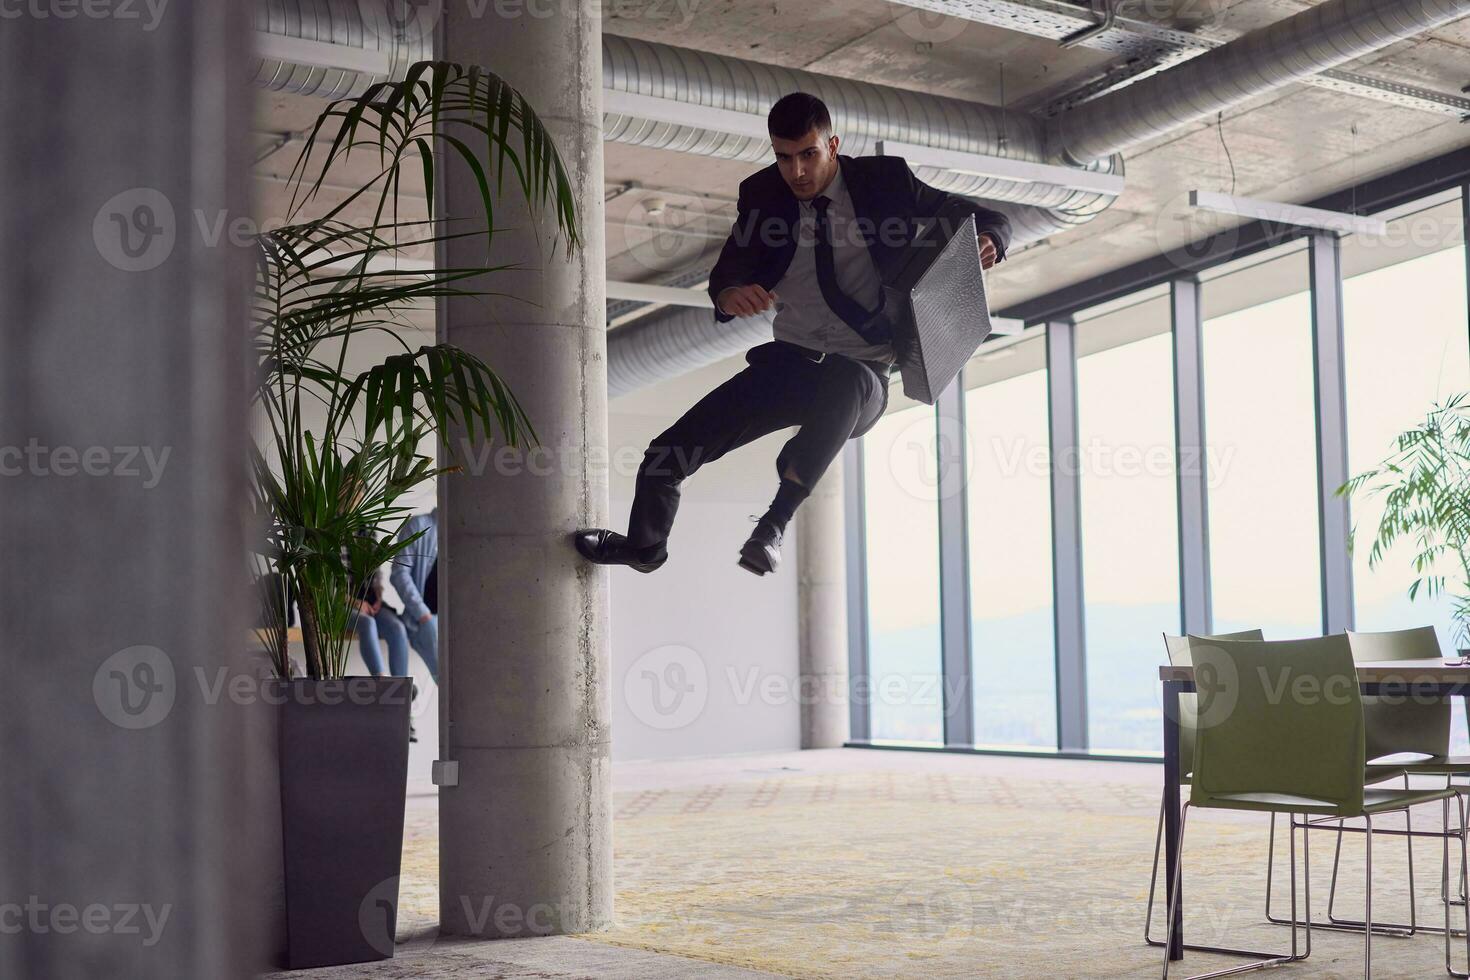 en el moderno oficina, un empresario con un maletín cautiva todos como él realiza emocionante aéreo acrobacia, desafiando gravedad con su atrevido saltos y exhibiendo su agilidad con asombroso teatralidad. foto